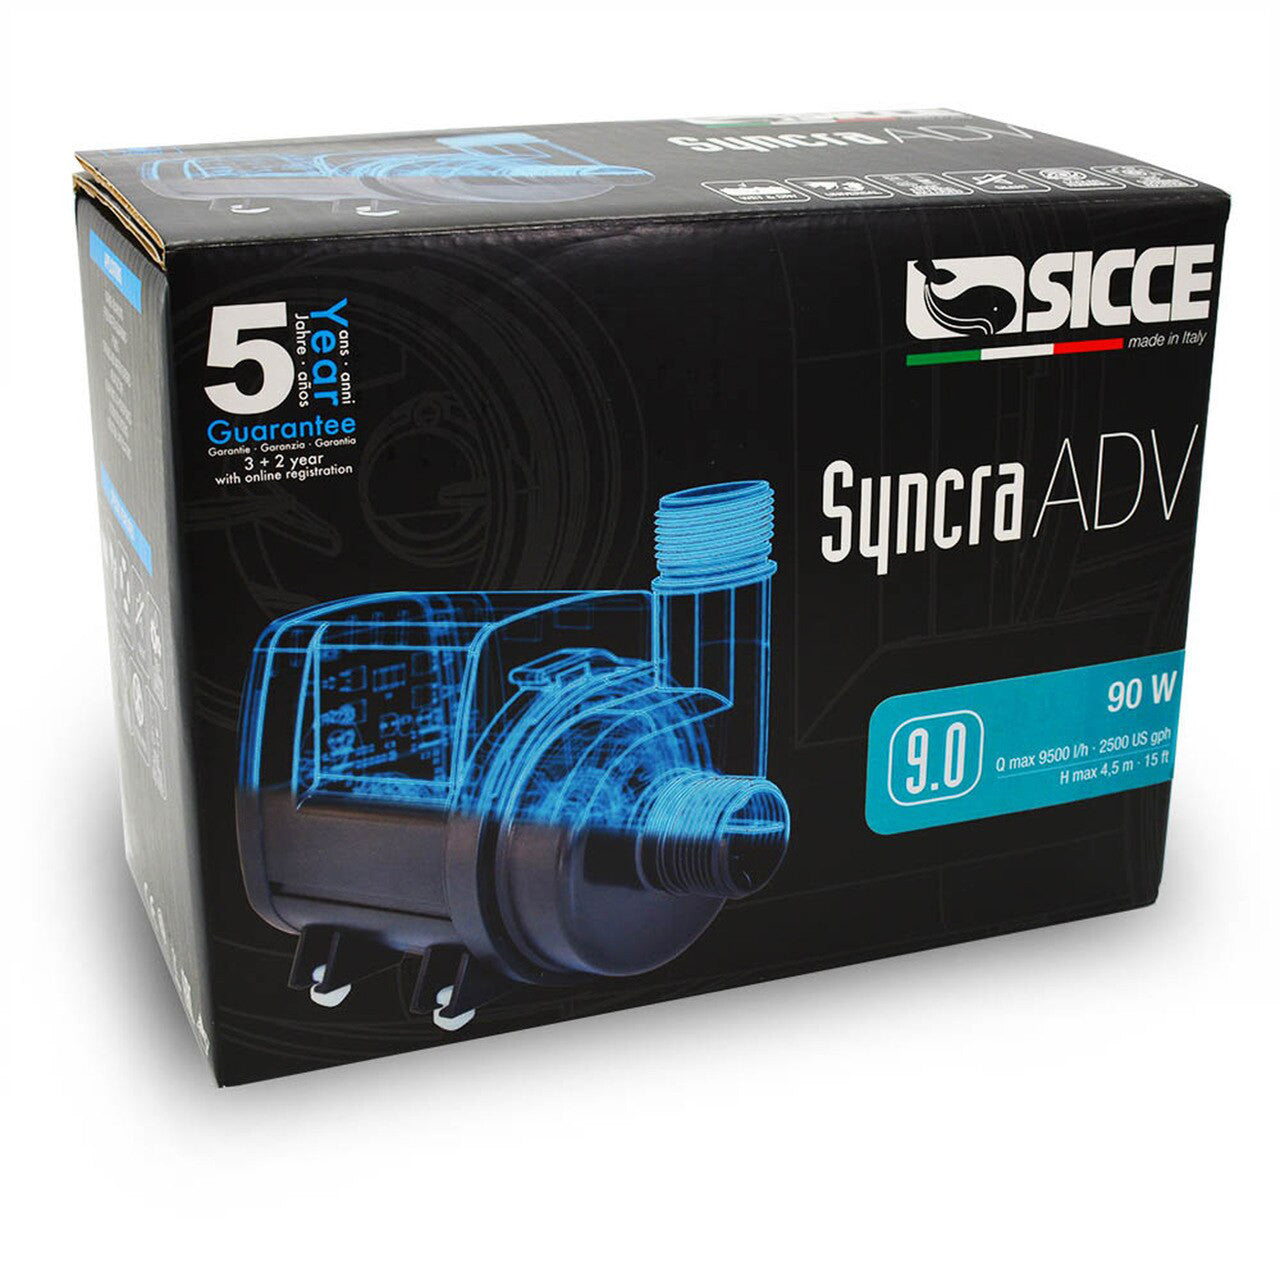 Sicce SYNCRA ADV 9.0 Return Pump - 2500 GPH